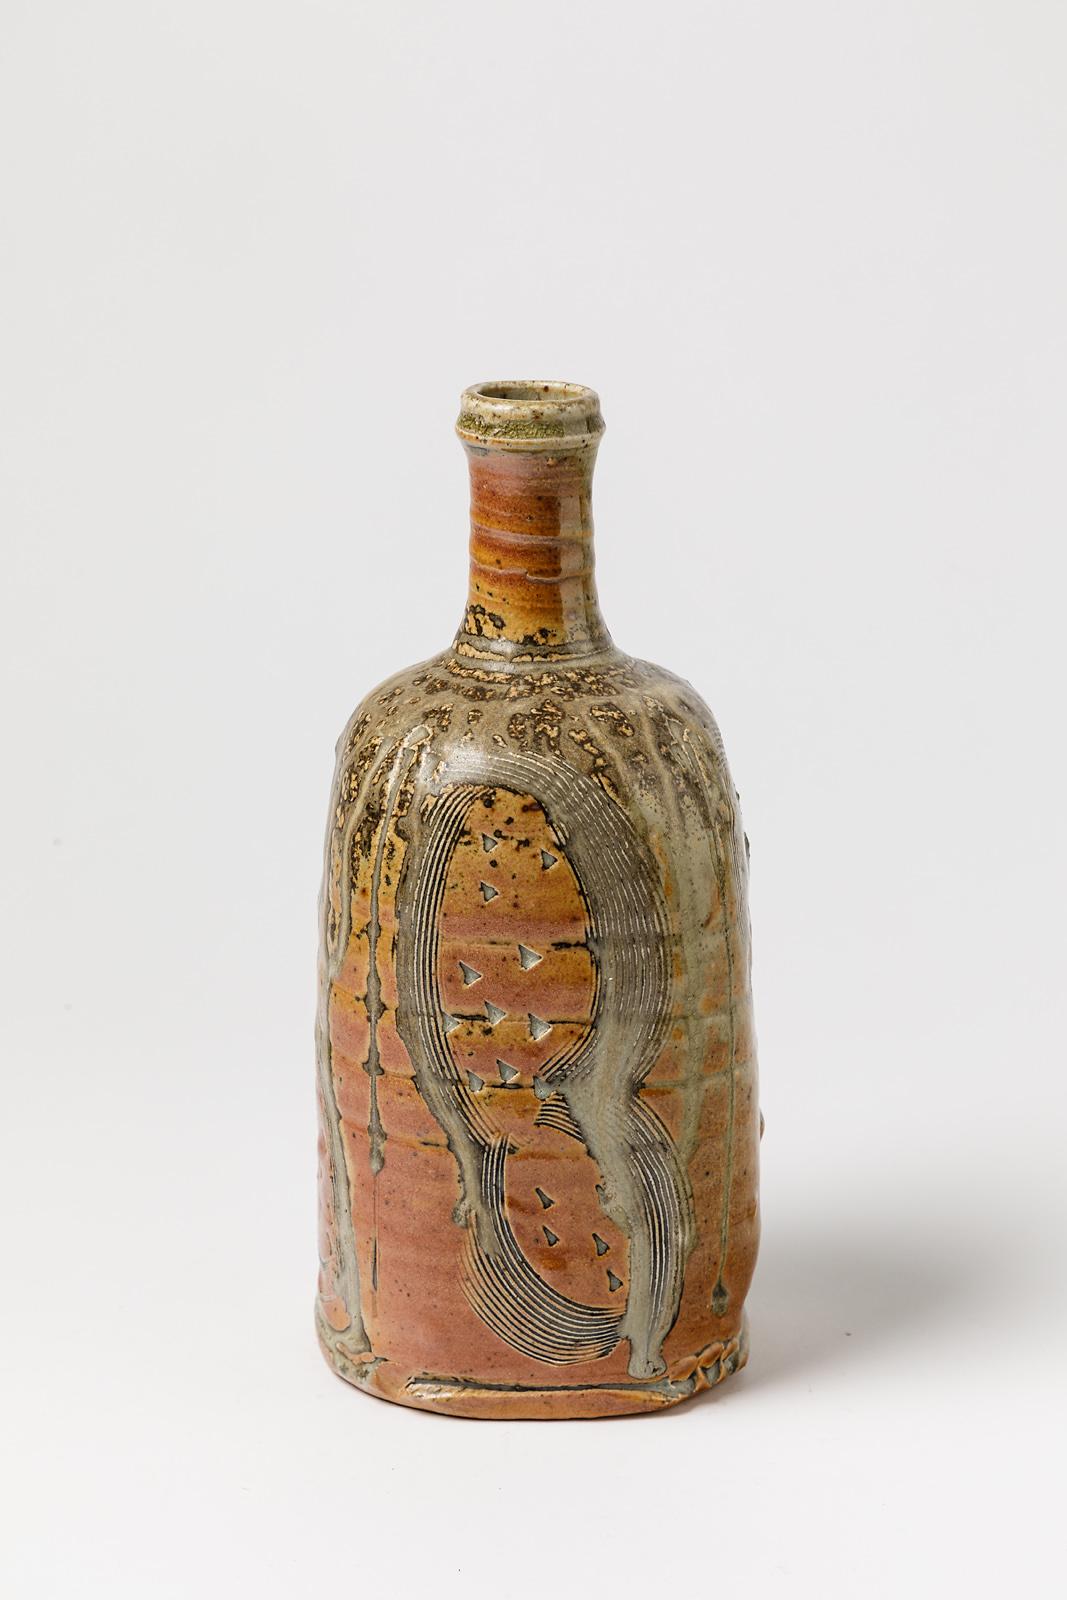 Stoneware Colored Ceramic Bottle or Vase by D Garet La Borne circa 1990 For Sale 1